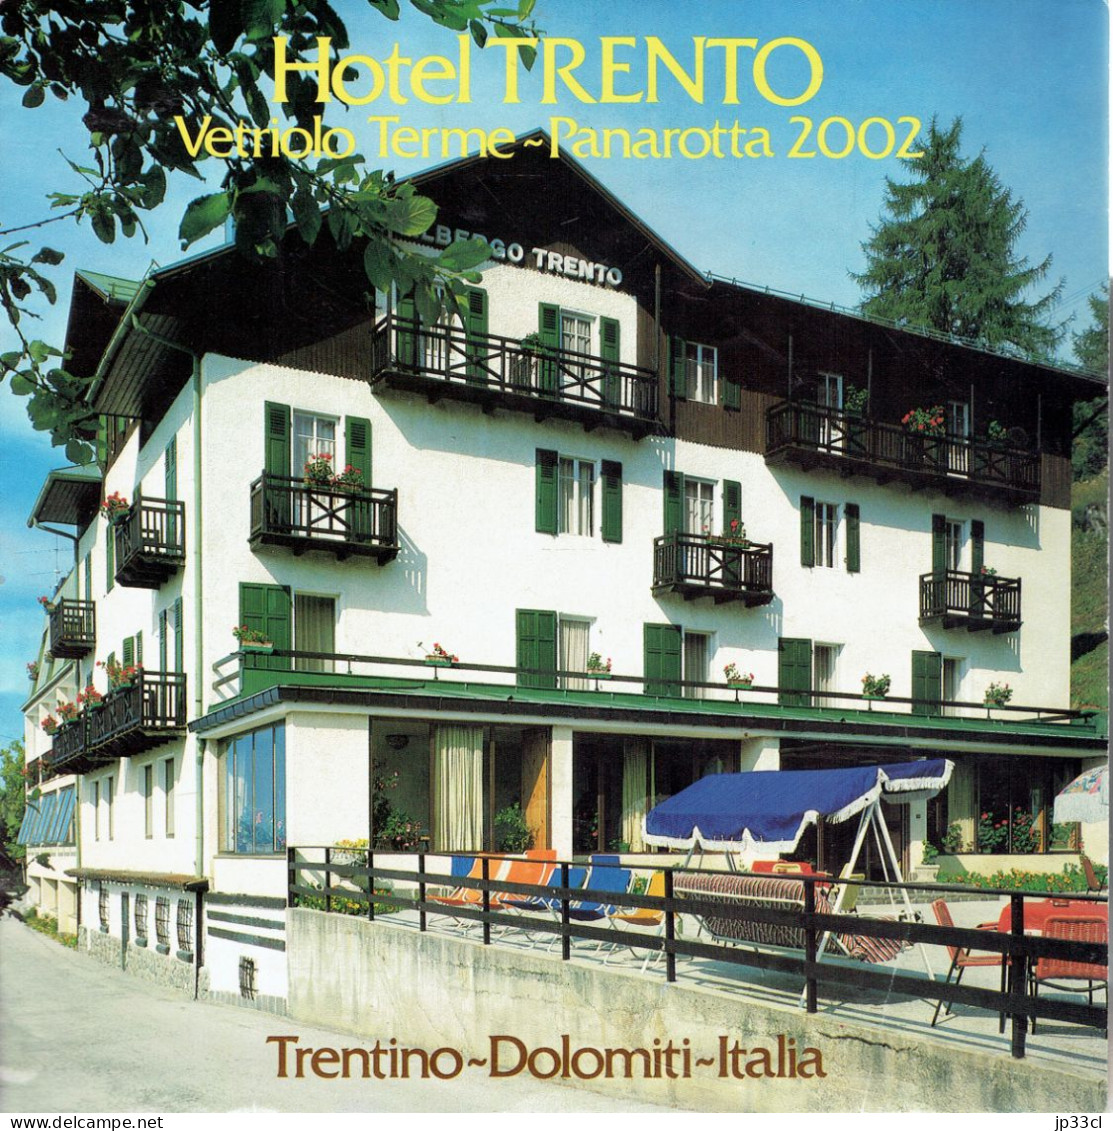 Dépliant Sur L'Hôtel Trento Vetriolo Terme - Panarota 2002, Dolomiti (en Français, Italien, Allemand Et Anglais) - Dépliants Touristiques